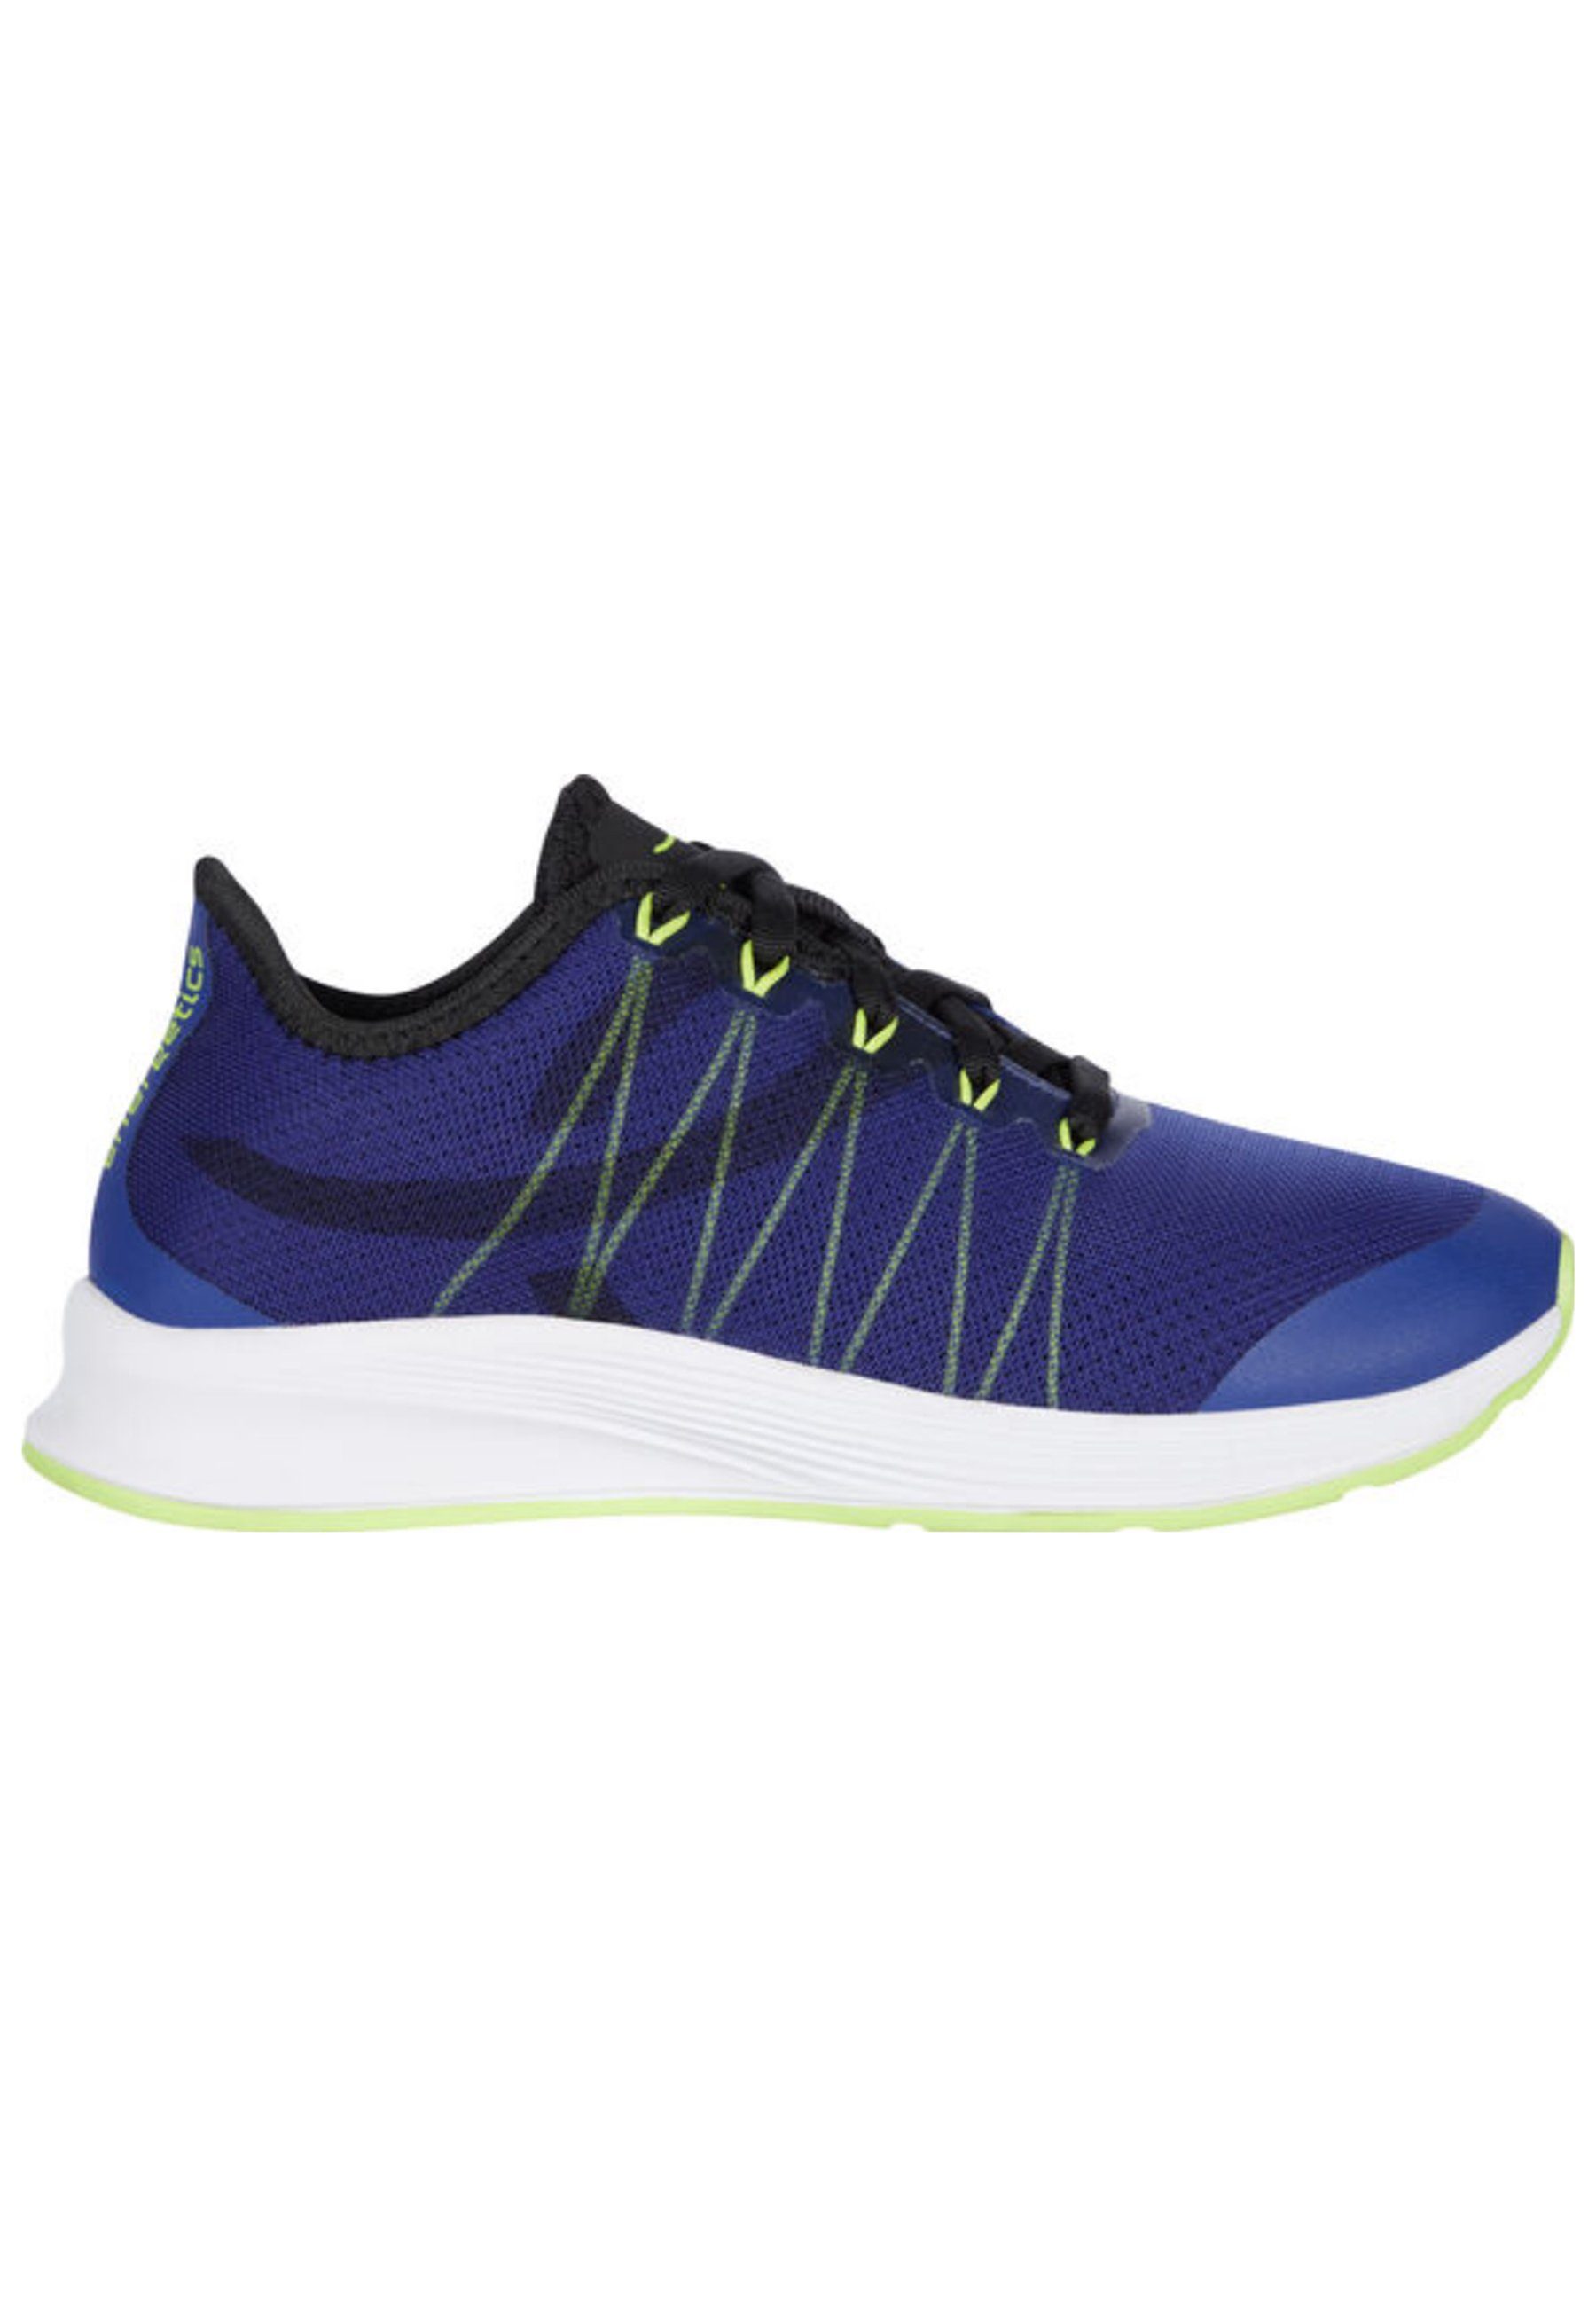 Energetics Oz 2.3 blau Sneaker